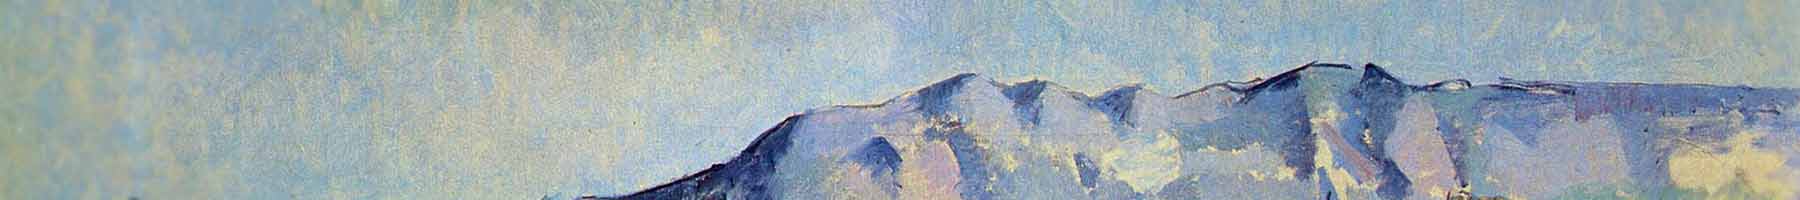 blue and grey image of Mont Sainte-Victoire, Paul Cézanne